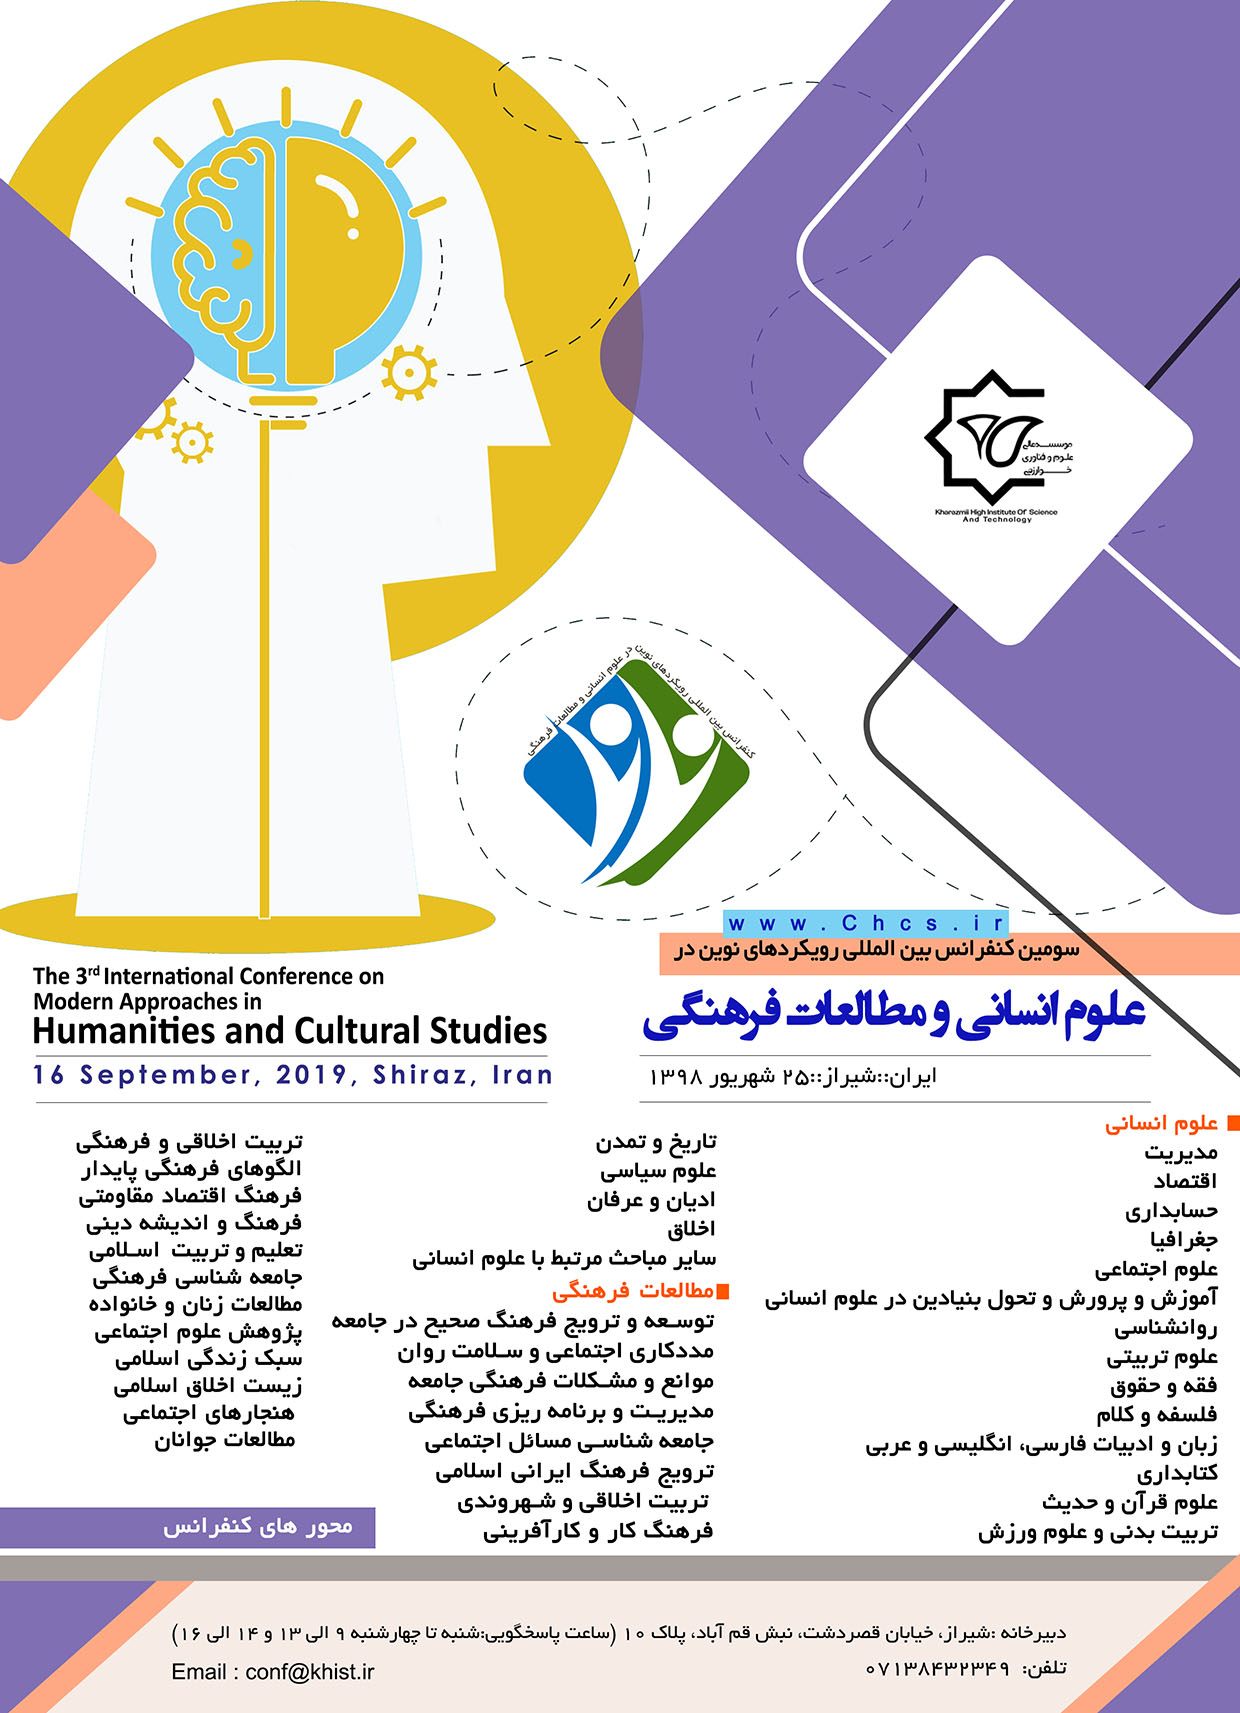 پوستر سومین کنفرانس بین المللی رویکردهای نوین در علوم انسانی و مطالعات فرهنگی